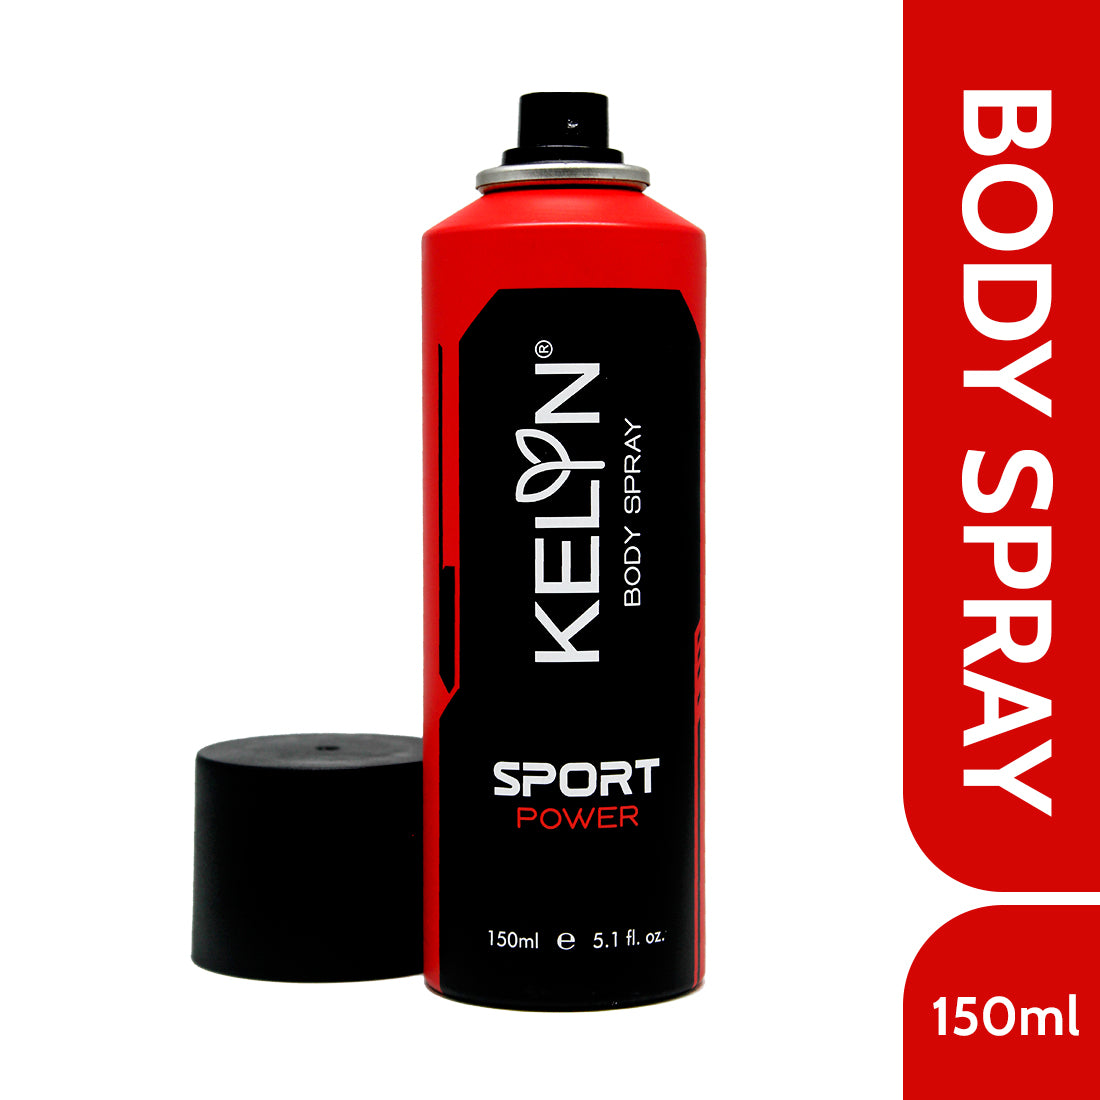 Sports Power Deodorant Body Spray, 150 ml